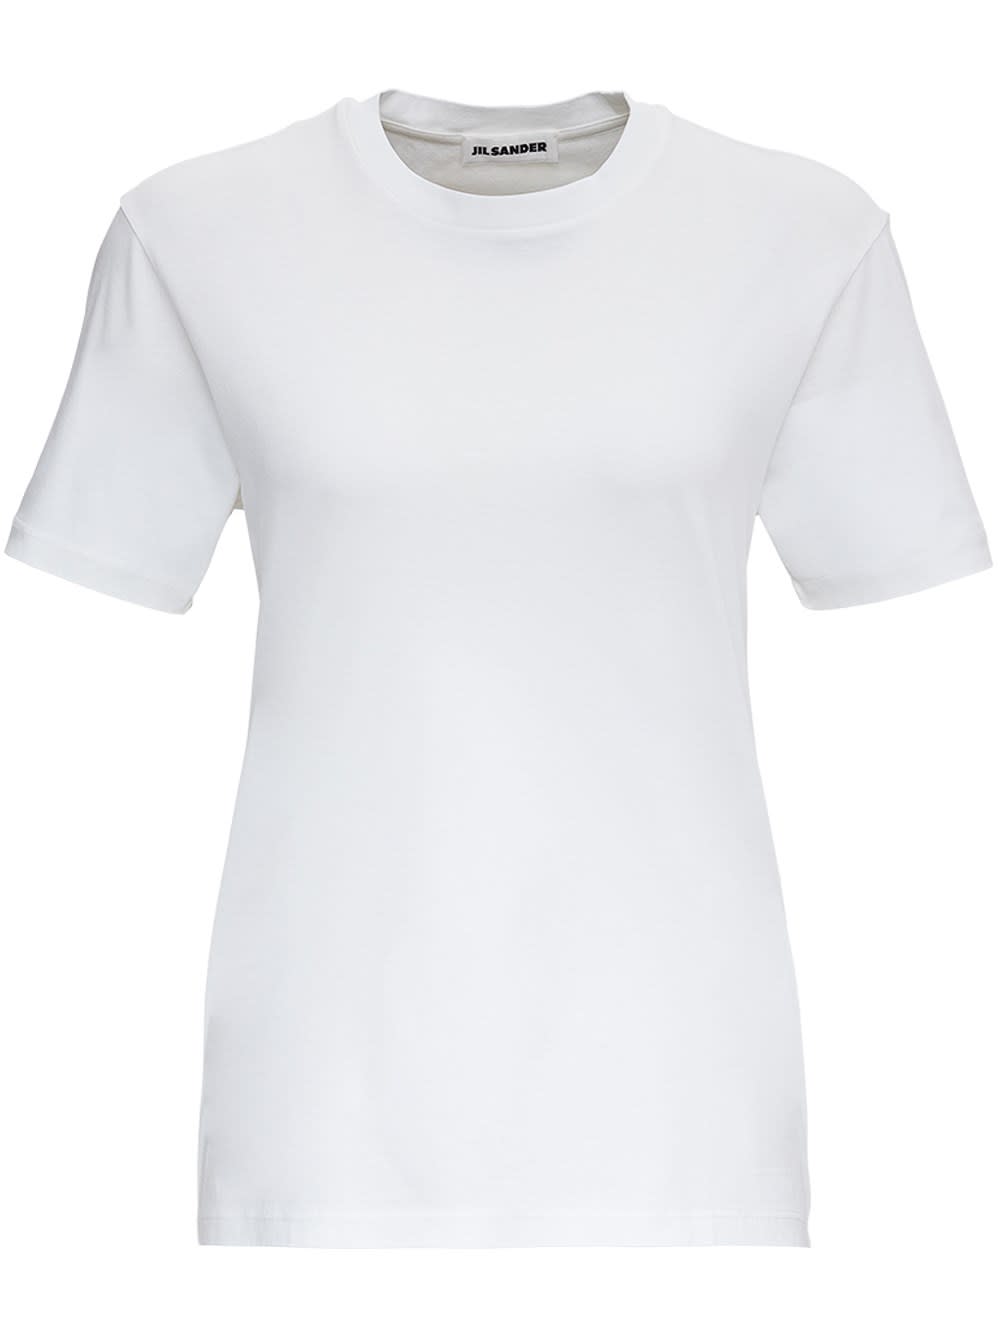 Jil Sander White Jersey T-shirt